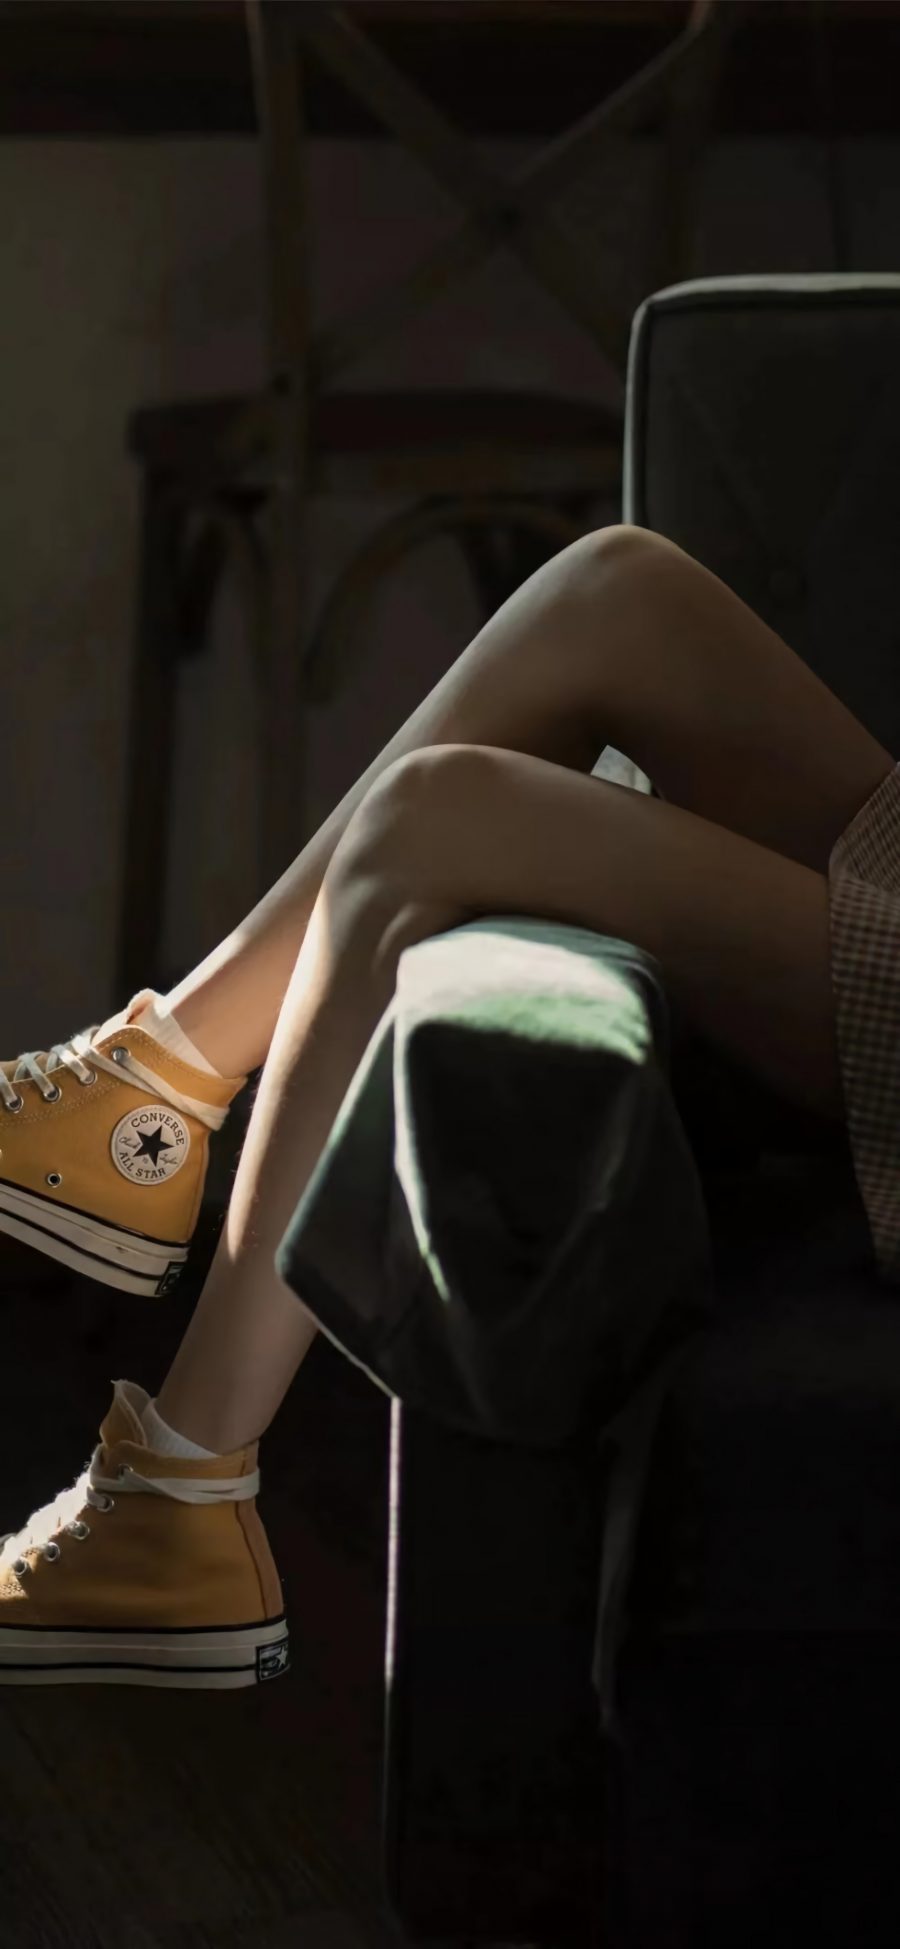 房间 沙发 女孩 美腿 布鞋 4k手机壁纸-旺仔资源网